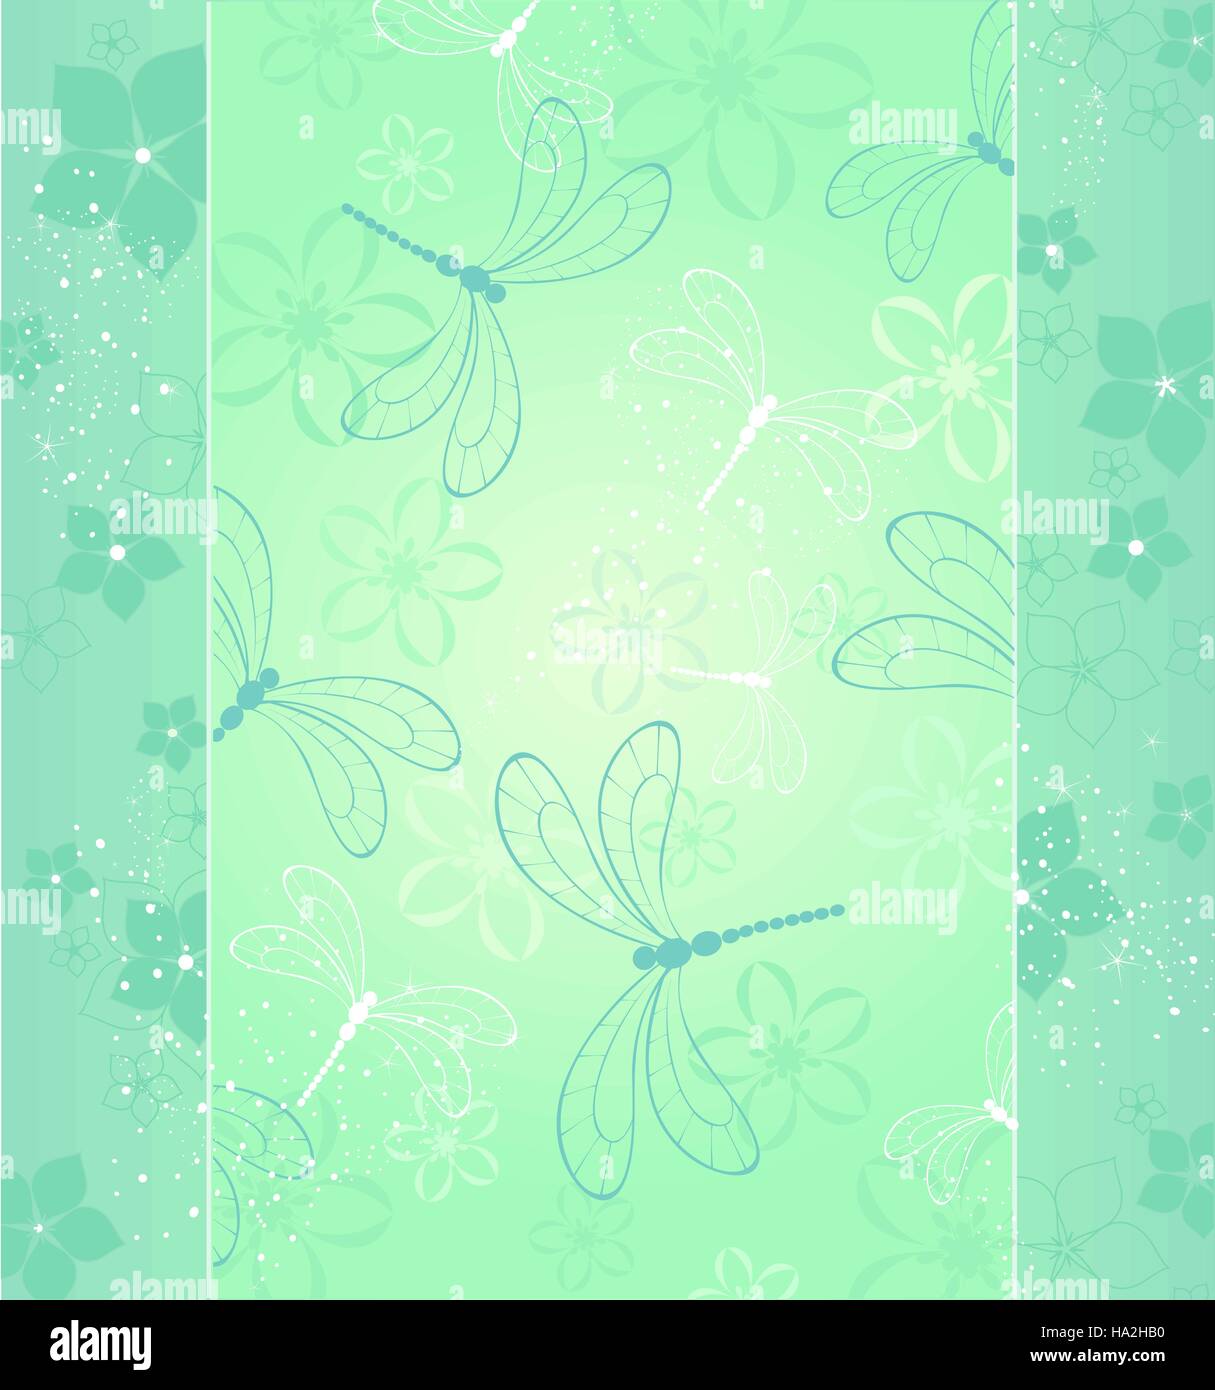 schönes Design mit stilisierten Libellen und Blumen auf hellgrünem Hintergrund. Stock Vektor